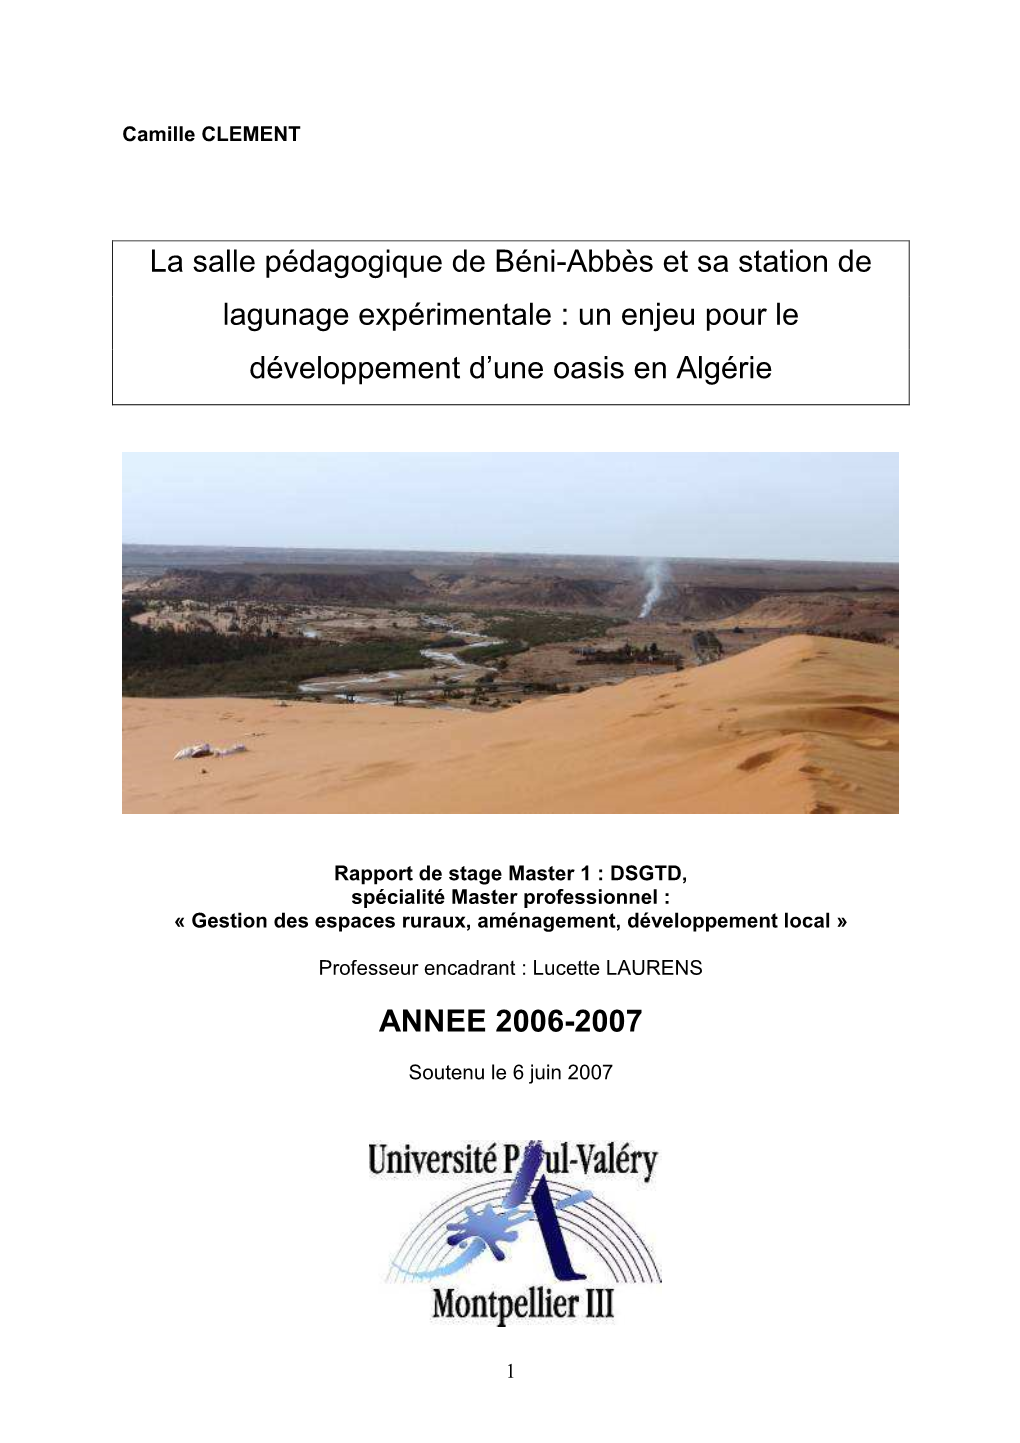 La Salle Pédagogique De Béni-Abbès Et Sa Station De Lagunage Expérimentale : Un Enjeu Pour Le Développement D’Une Oasis En Algérie